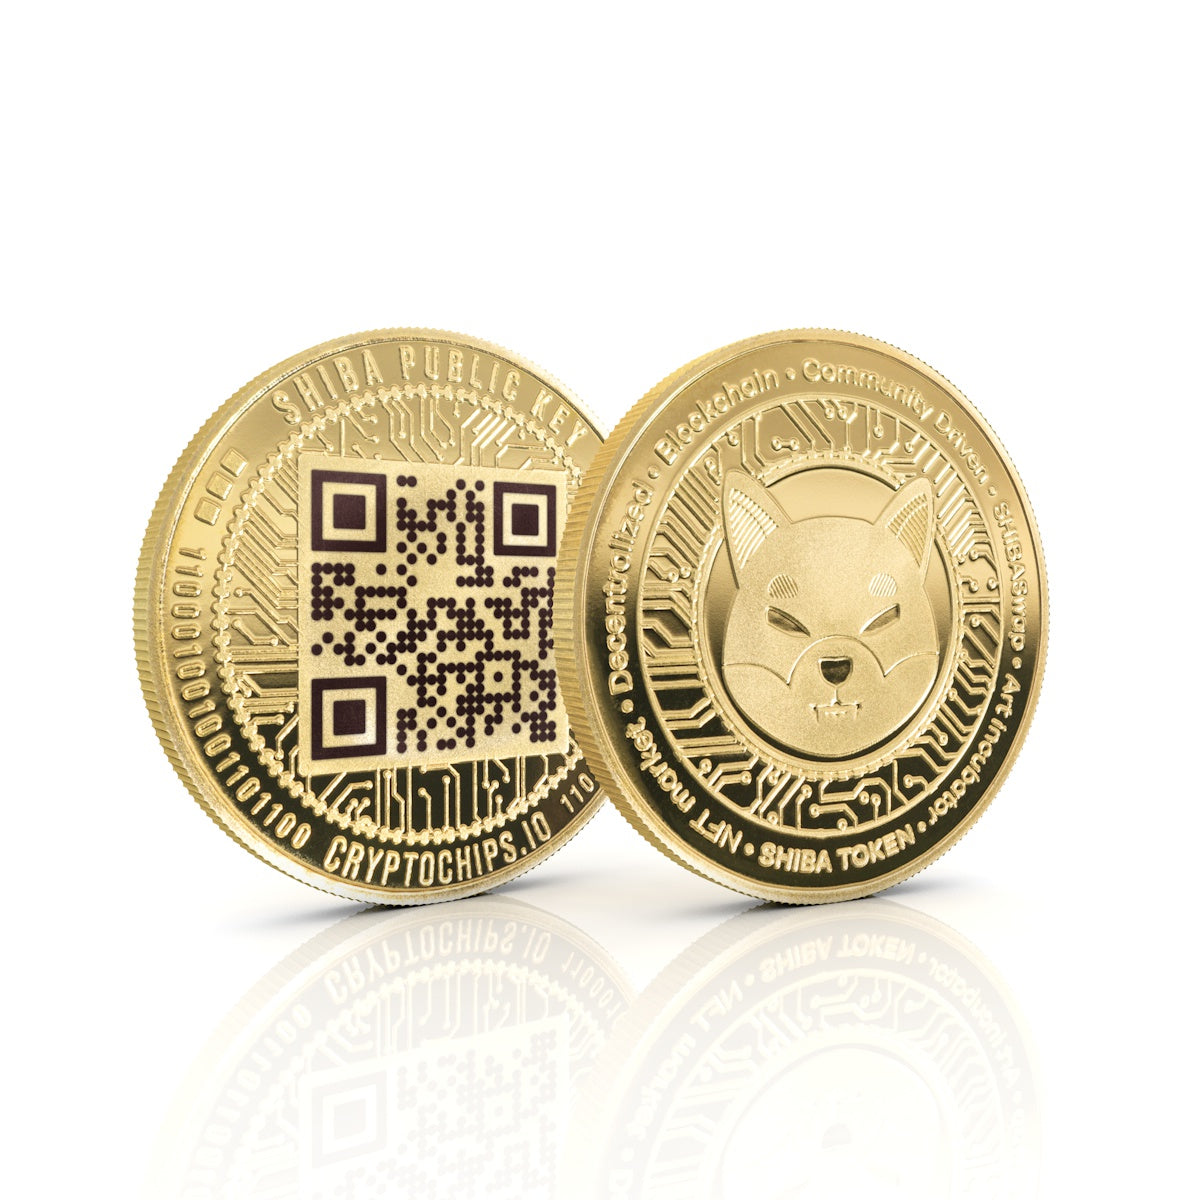 Cryptochips | Shiba Inu (SHIB) QR Coin | Laser Engraved Public Key